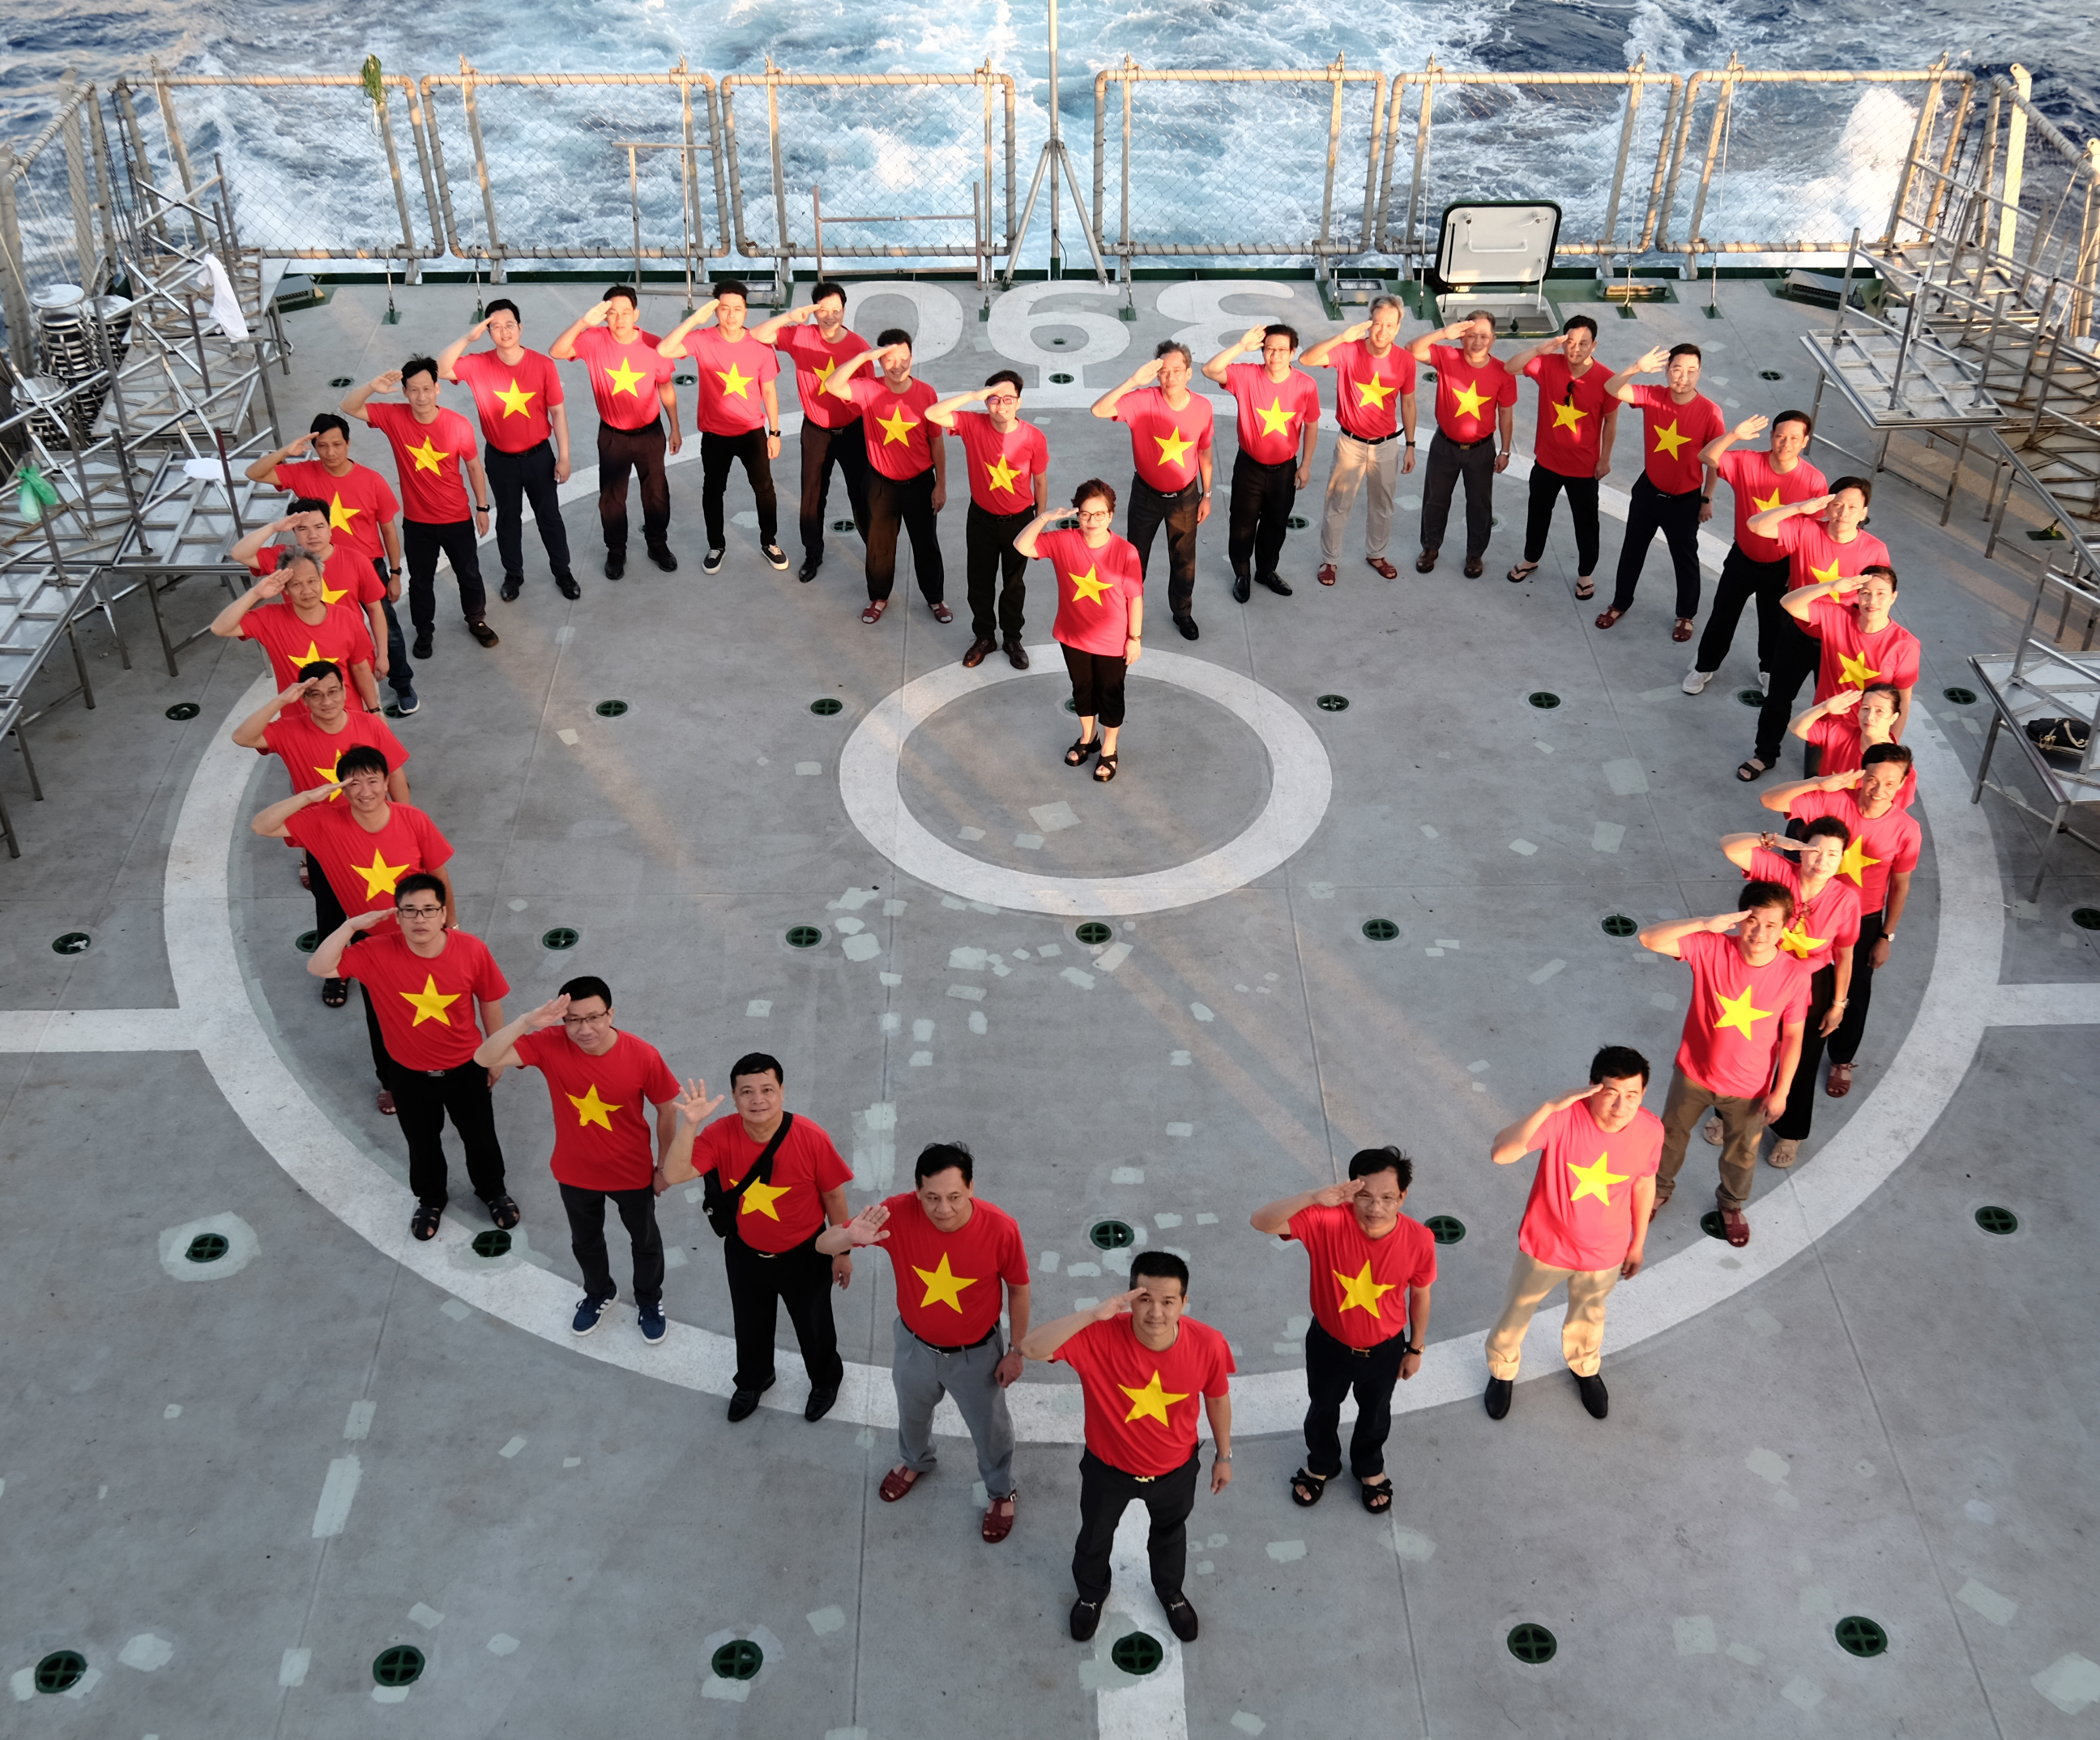 Đoàn công tác cùng nhau xếp hình trái tim trên khu vực sân bay của tàu Kiểm ngư KN390.